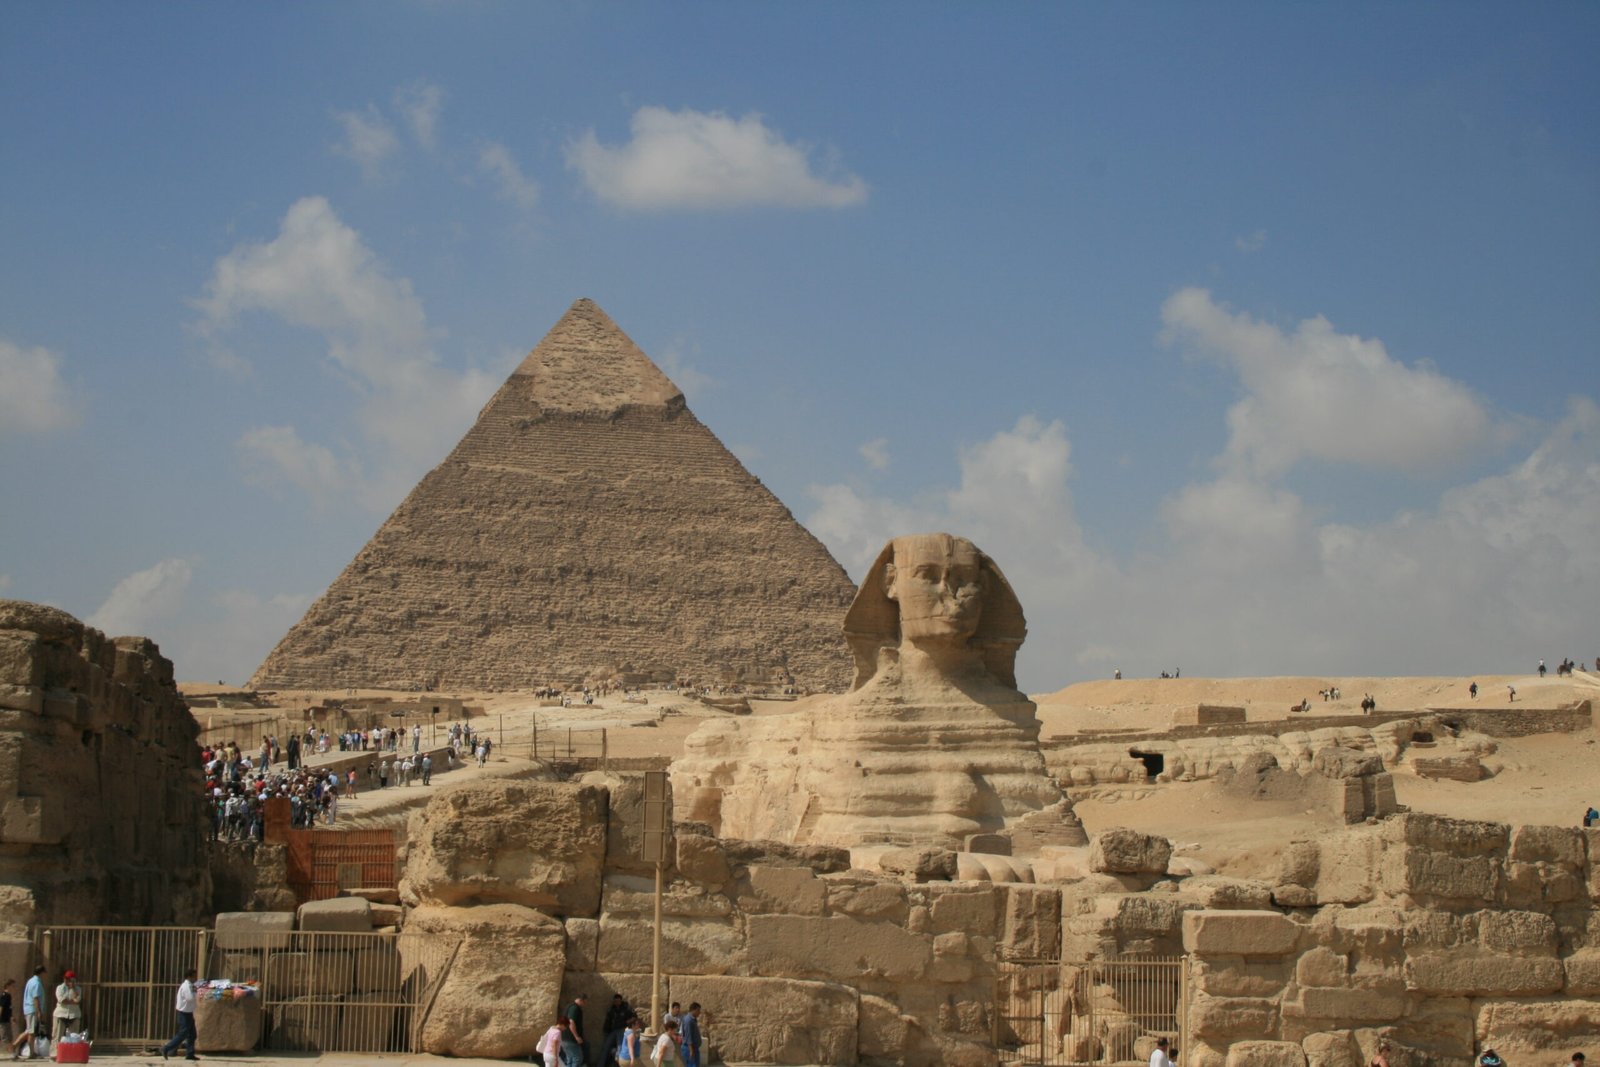 Giza Pyramids - Classic Egypt Tour